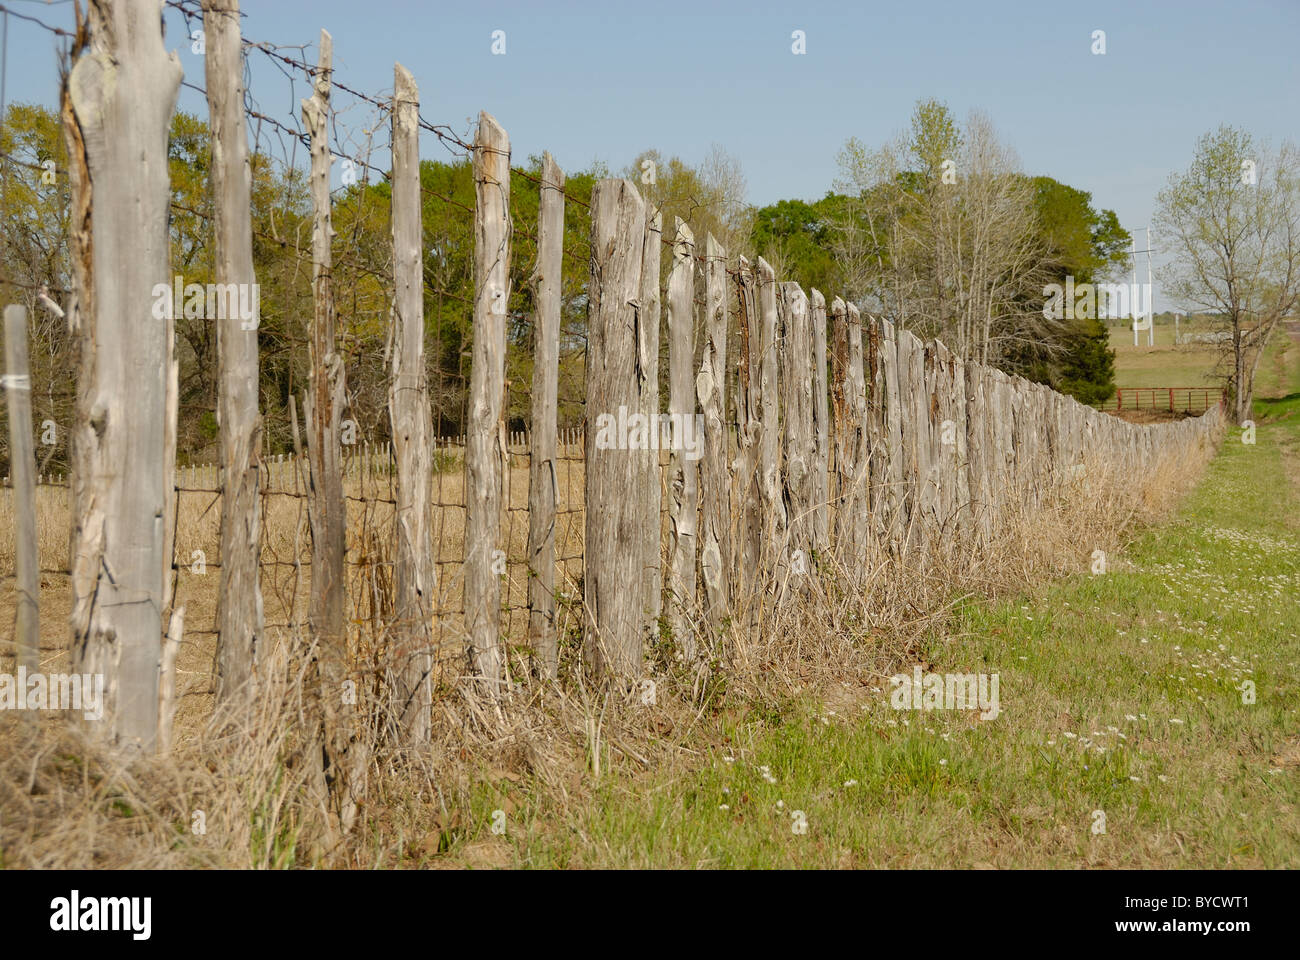 Una fila di stecche di legno facendo una recinzione in un paesaggio rurale. Foto Stock